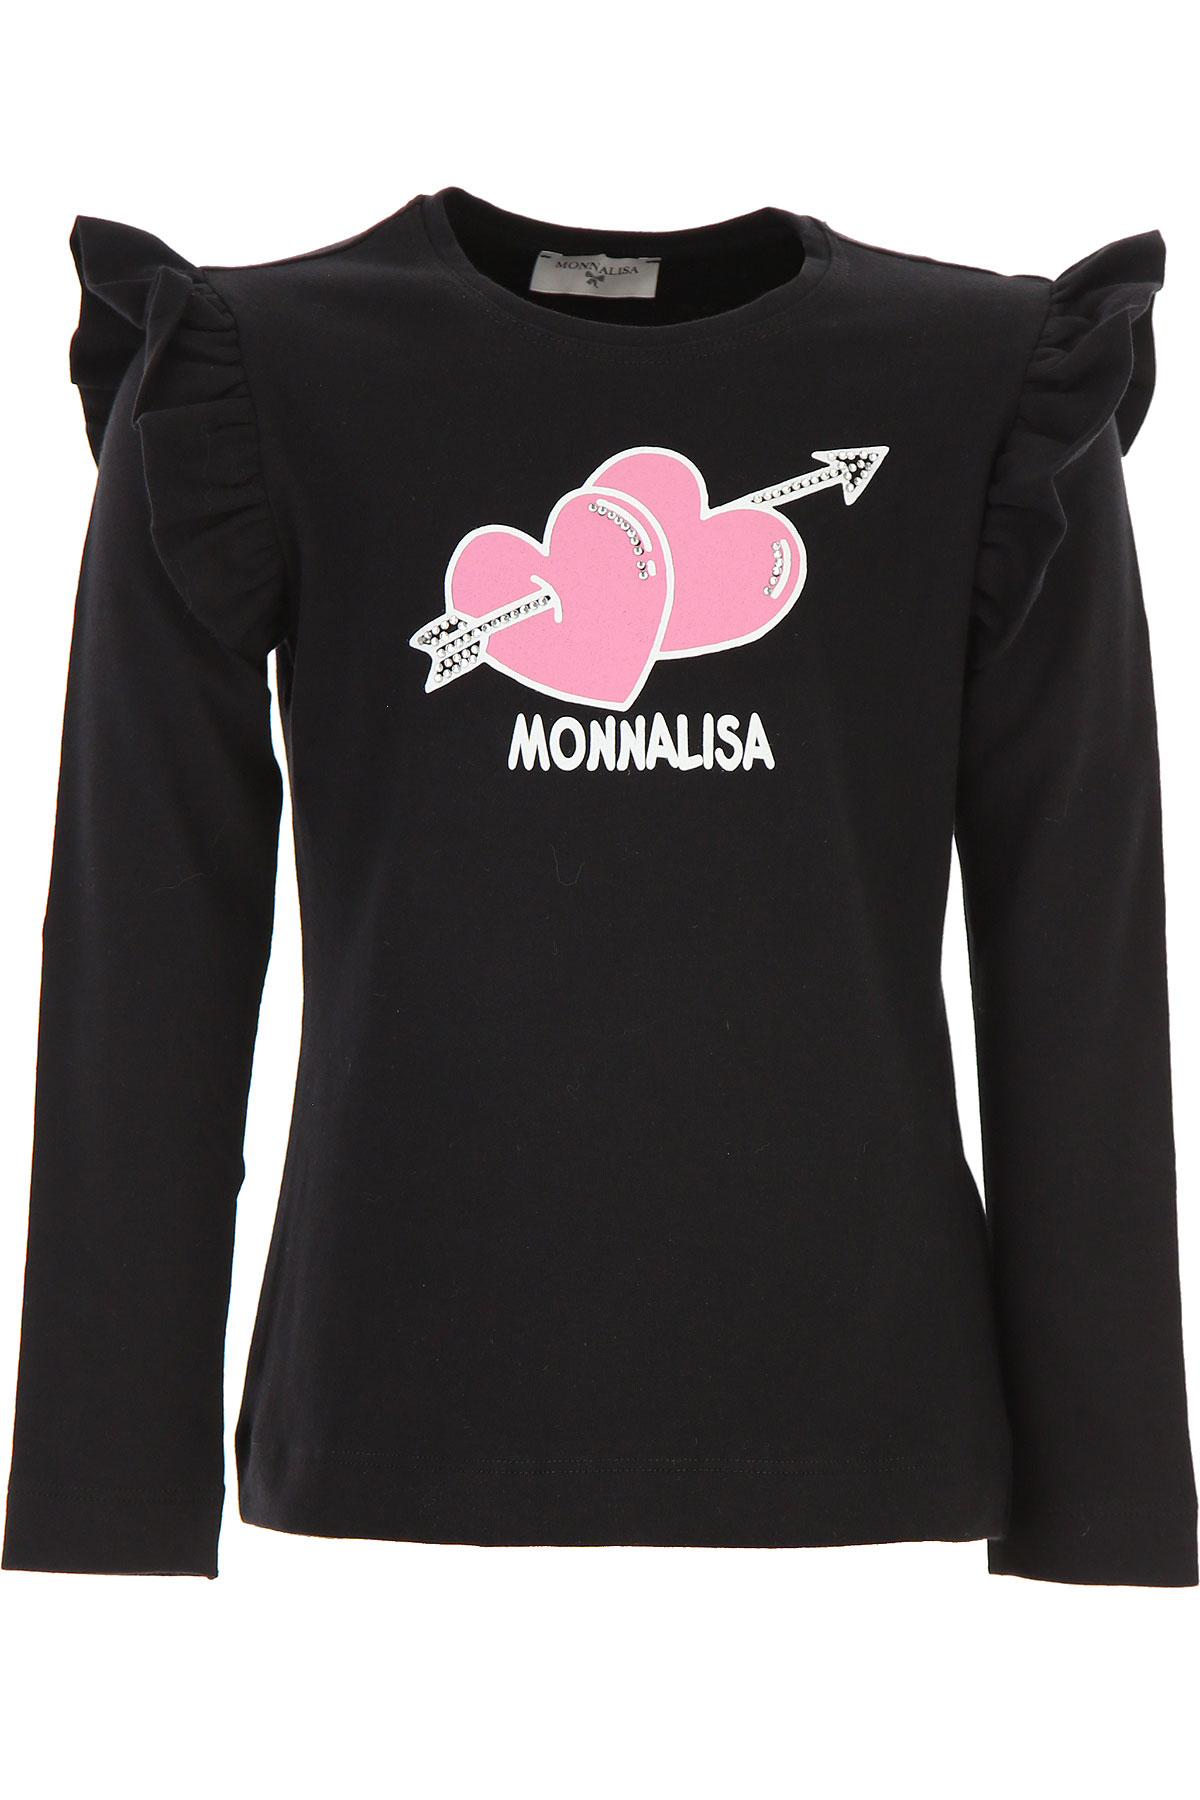 Monnalisa Kinder T-Shirt für Mädchen Günstig im Sale, Schwarz, Baumwolle, 2017, 6Y 7Y